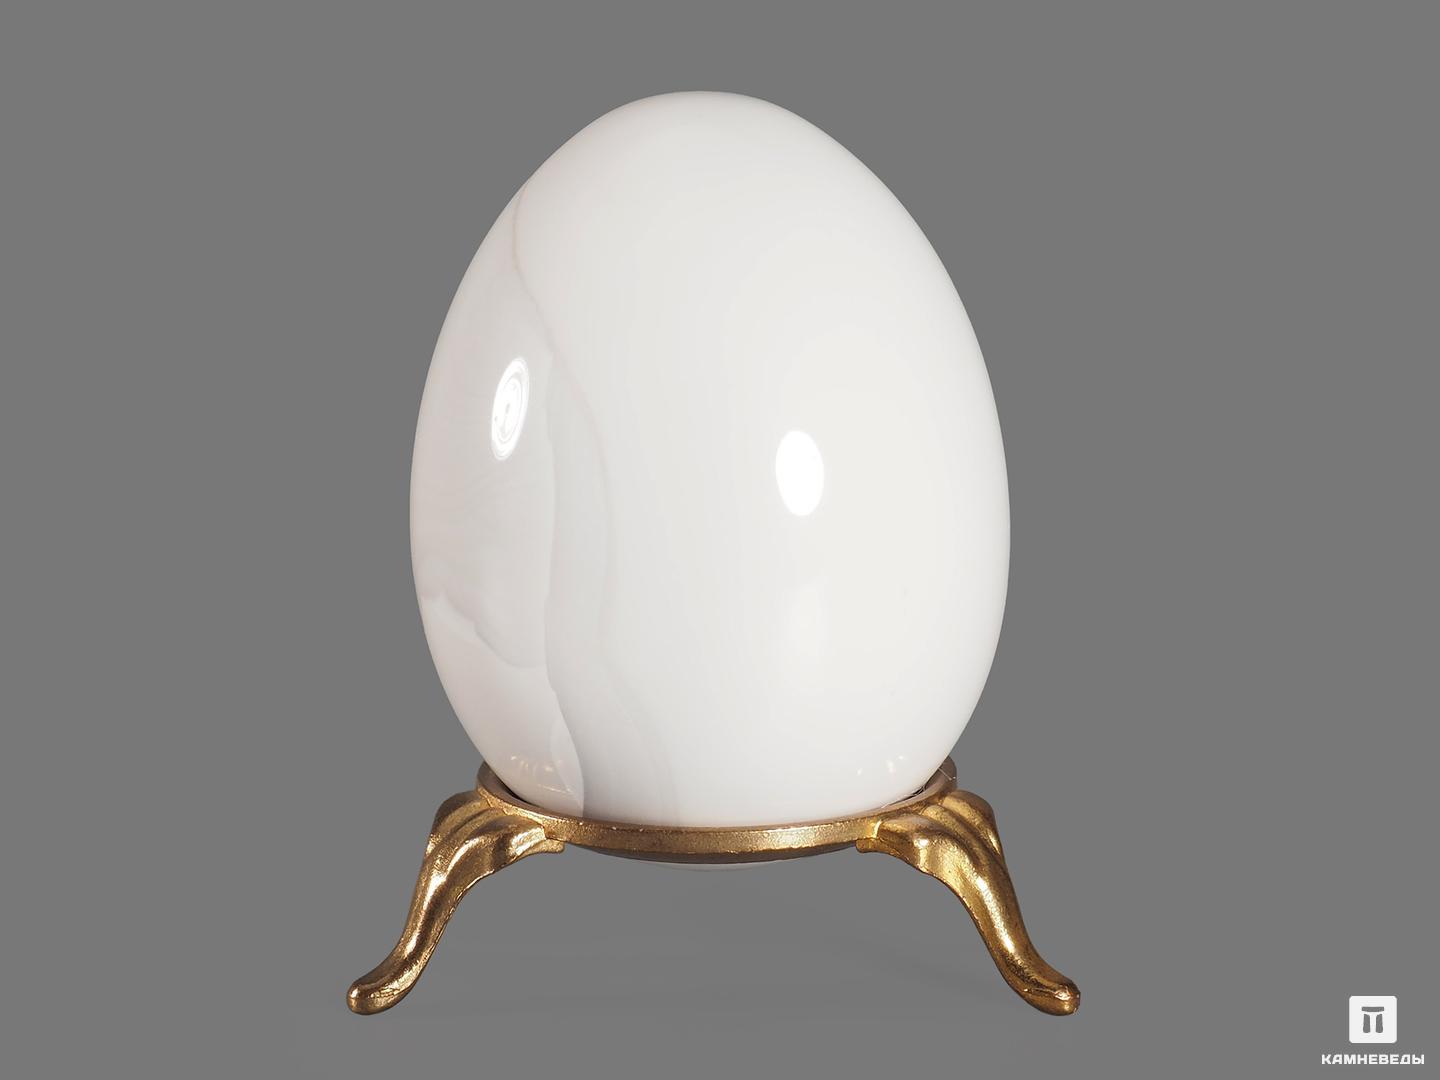 Яйцо из кахолонга (белого опала), 6,6х5,1 см, 18950, фото 2